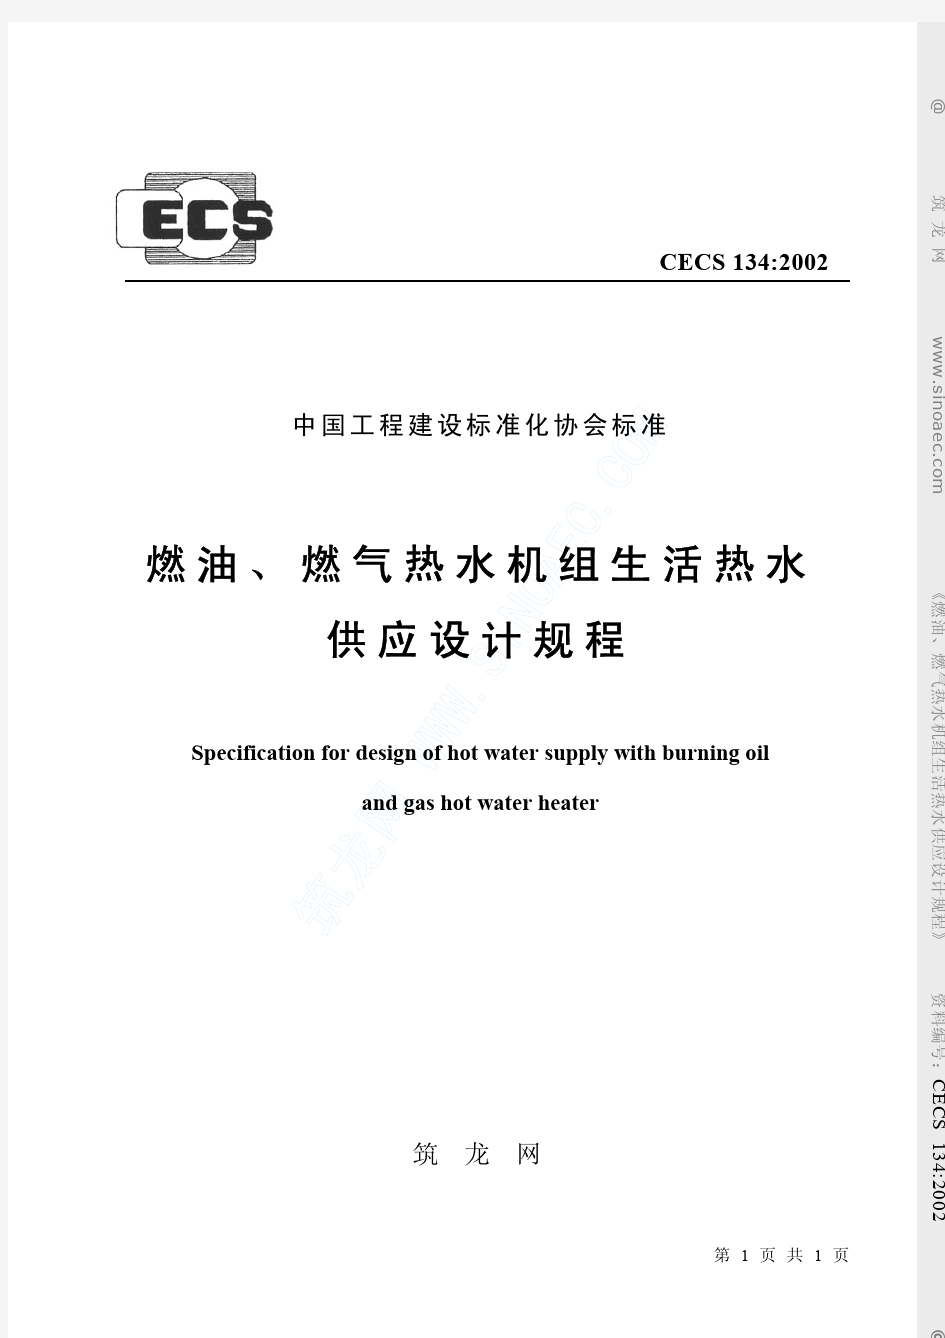 CECS134-2002++燃油、燃气热水机组生活热水供应设计规程